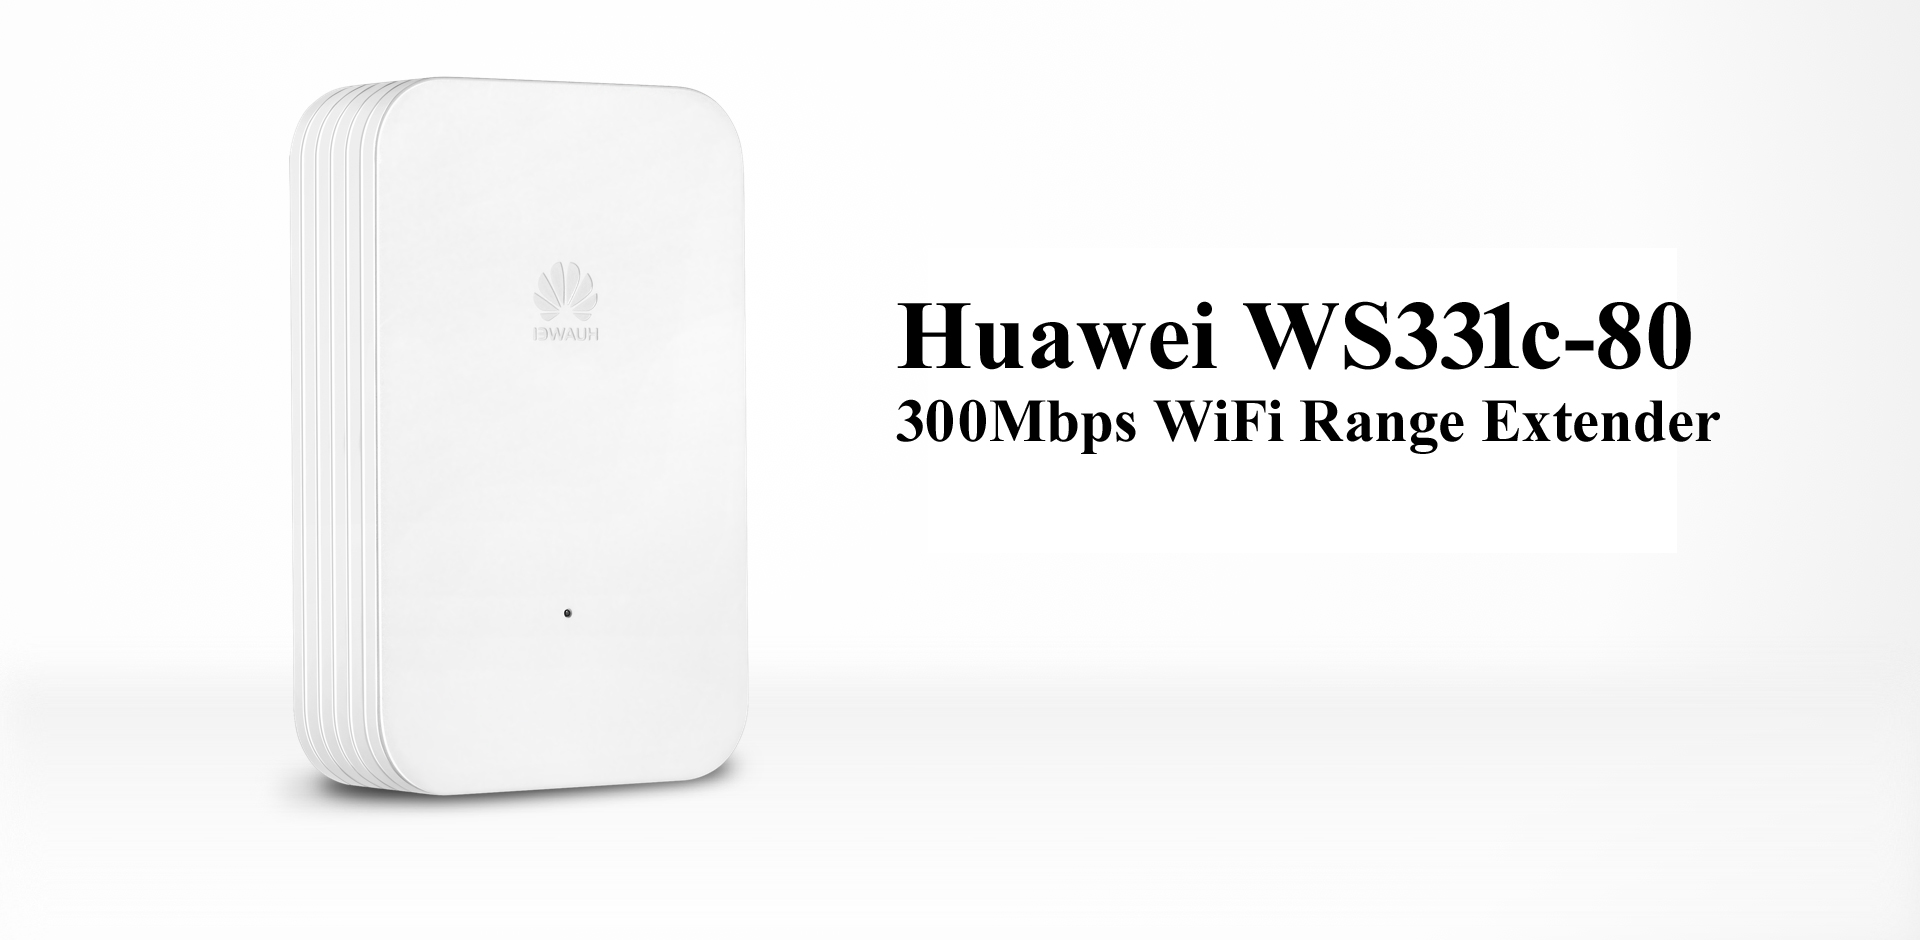 Huawei WS331c-80